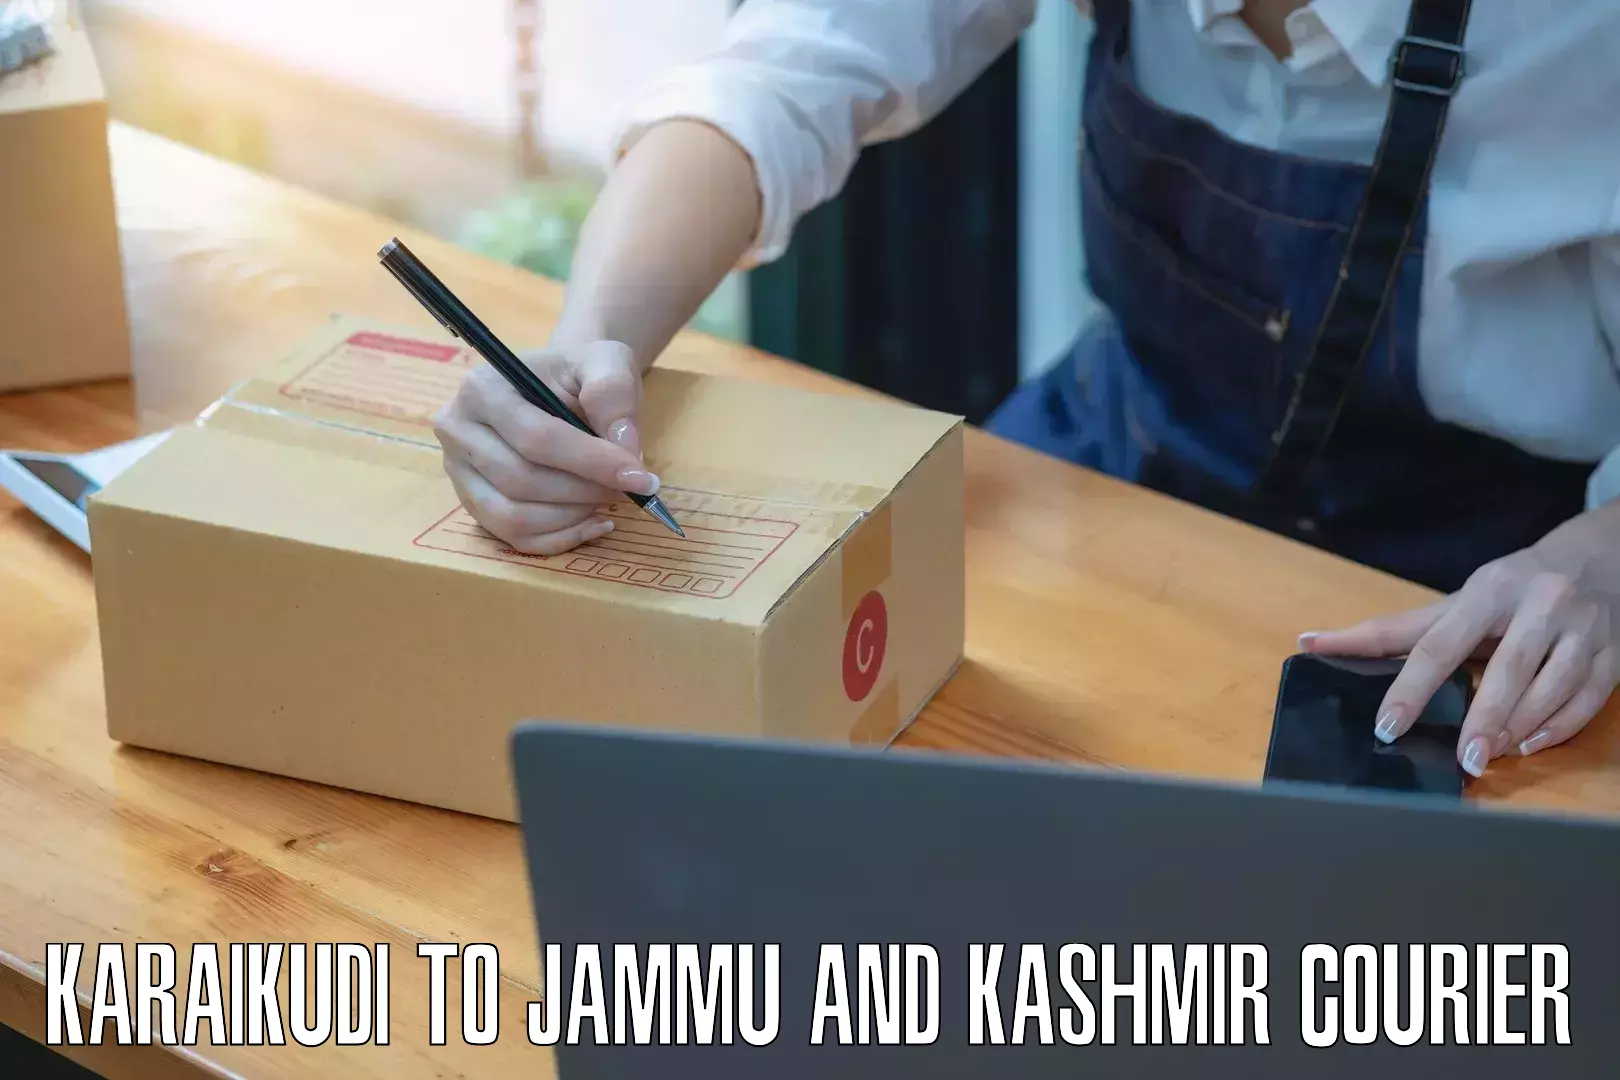 Long distance courier Karaikudi to Jammu and Kashmir